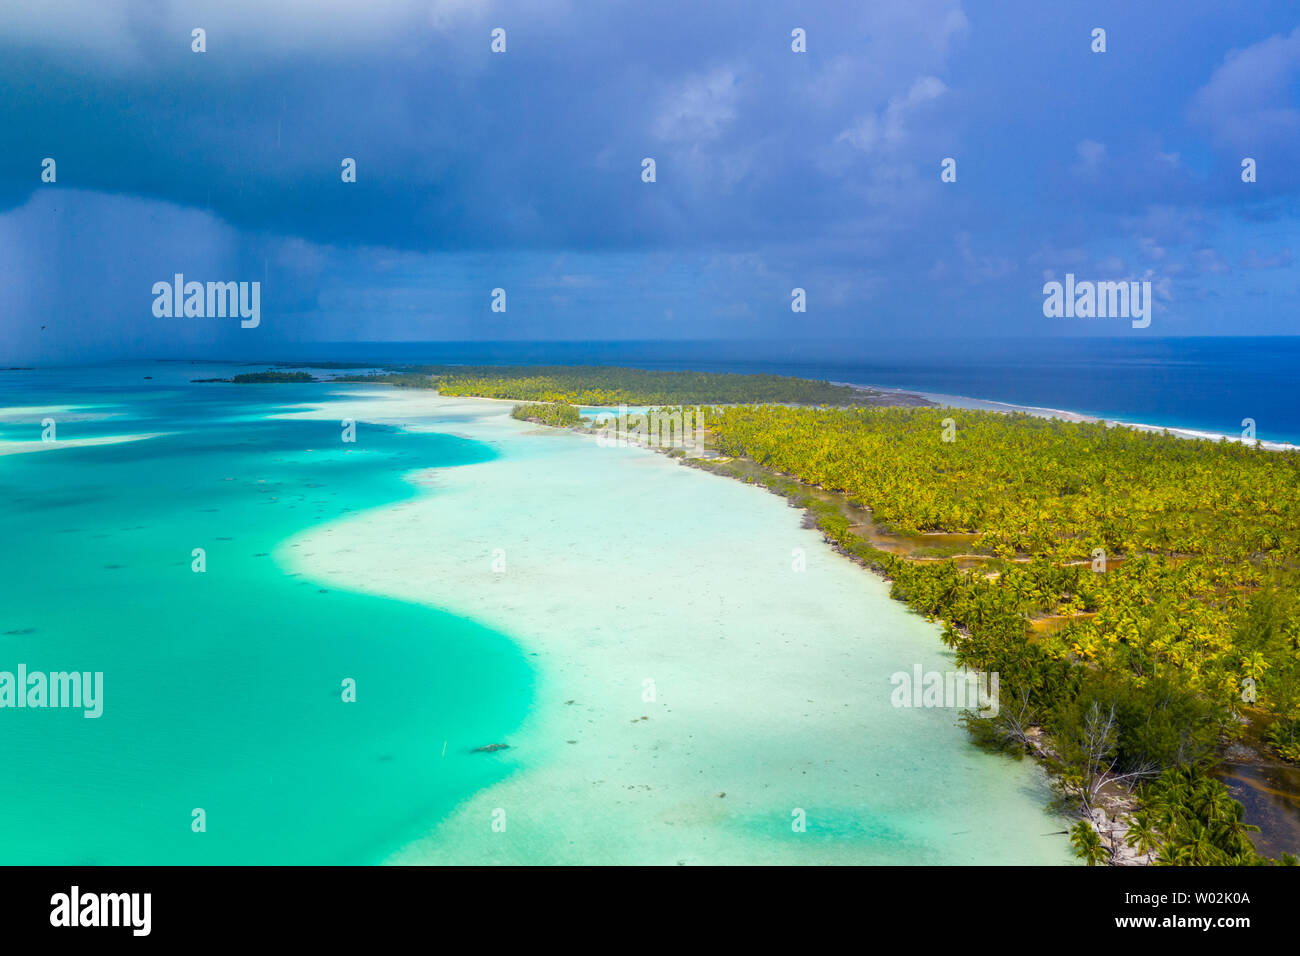 Polinesia Francese Tahiti antenna vista drone di Fakarava Atoll e la famosa laguna blu e isola motu con spiaggia perfetta, Coral reef e Oceano Pacifico. Viaggio tropicale paradiso nelle isole Tuamotus. Foto Stock